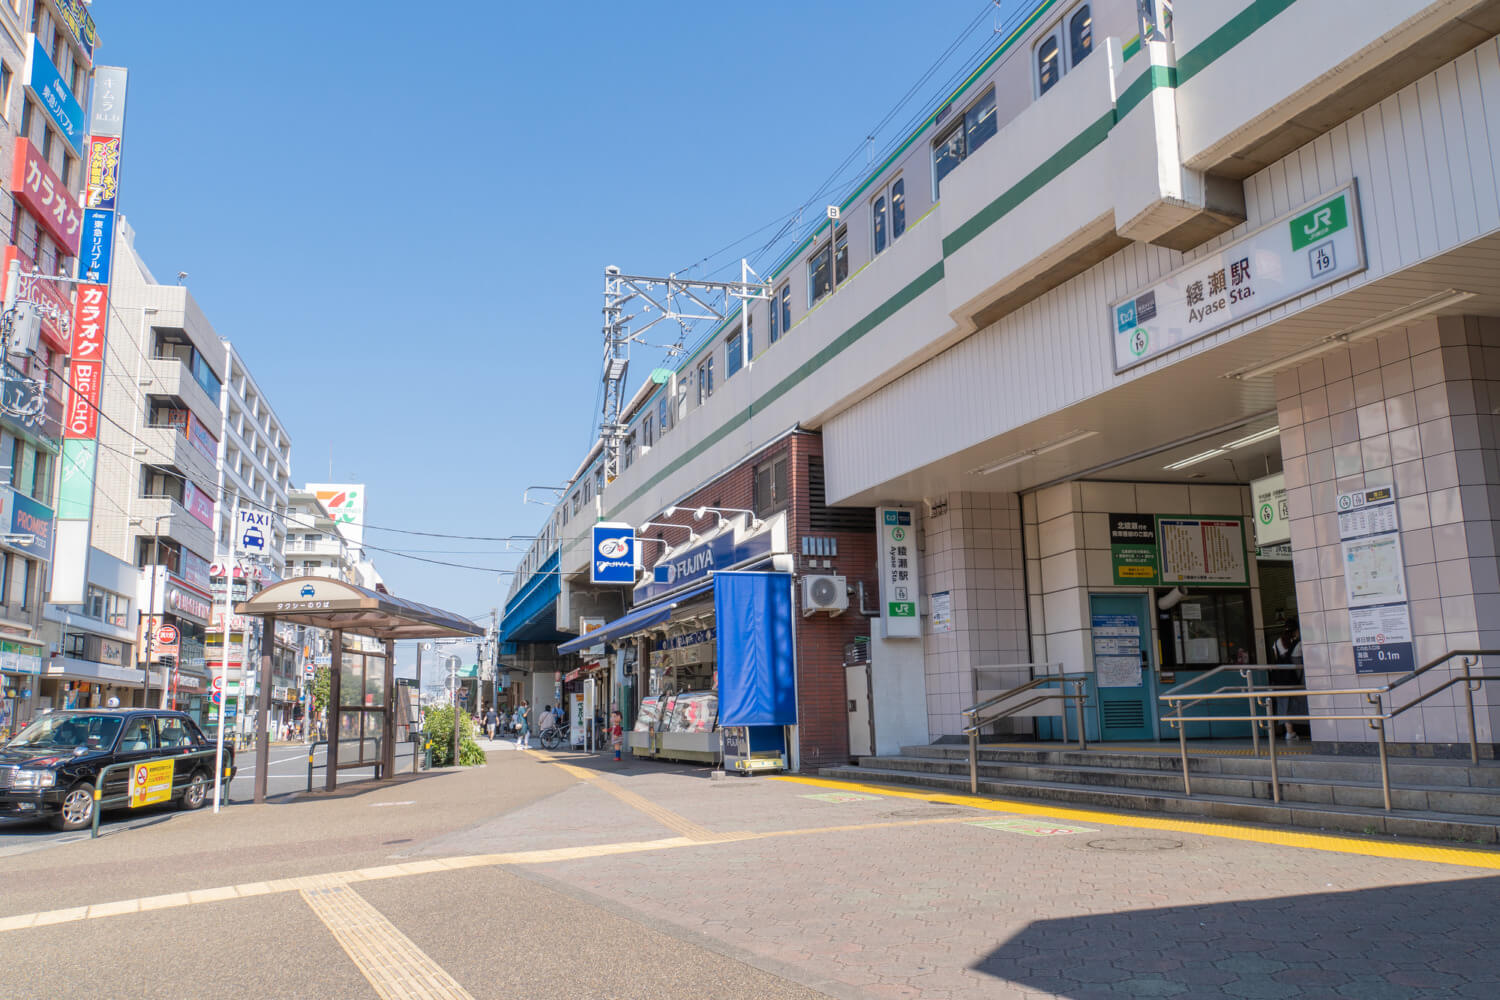 綾瀬駅周辺・足立区の粗大ごみの処分方法とおすすめの民間業者について